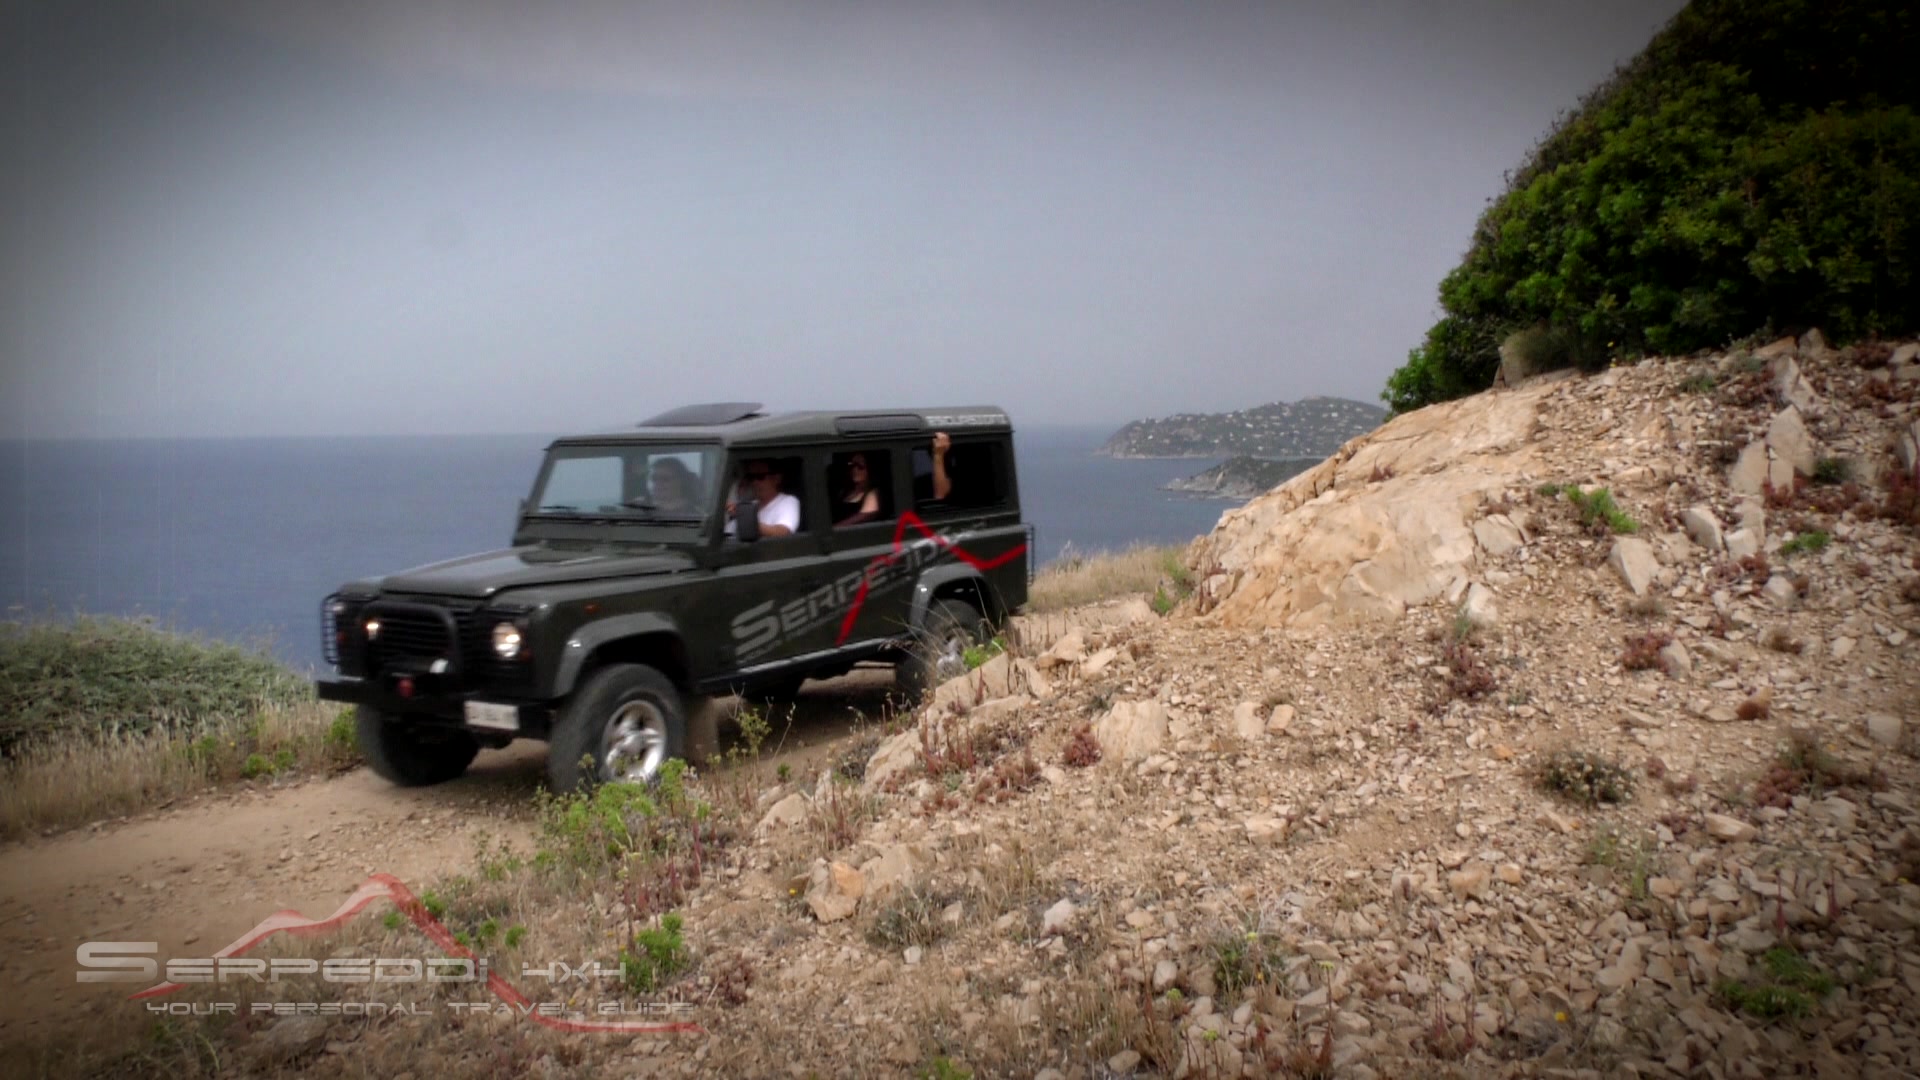 Escursione in Jeep in Sardegna zona Villasimius, Costa Rei, Parco dei Sette Fratelli, Cagliari, Pula e Chia.